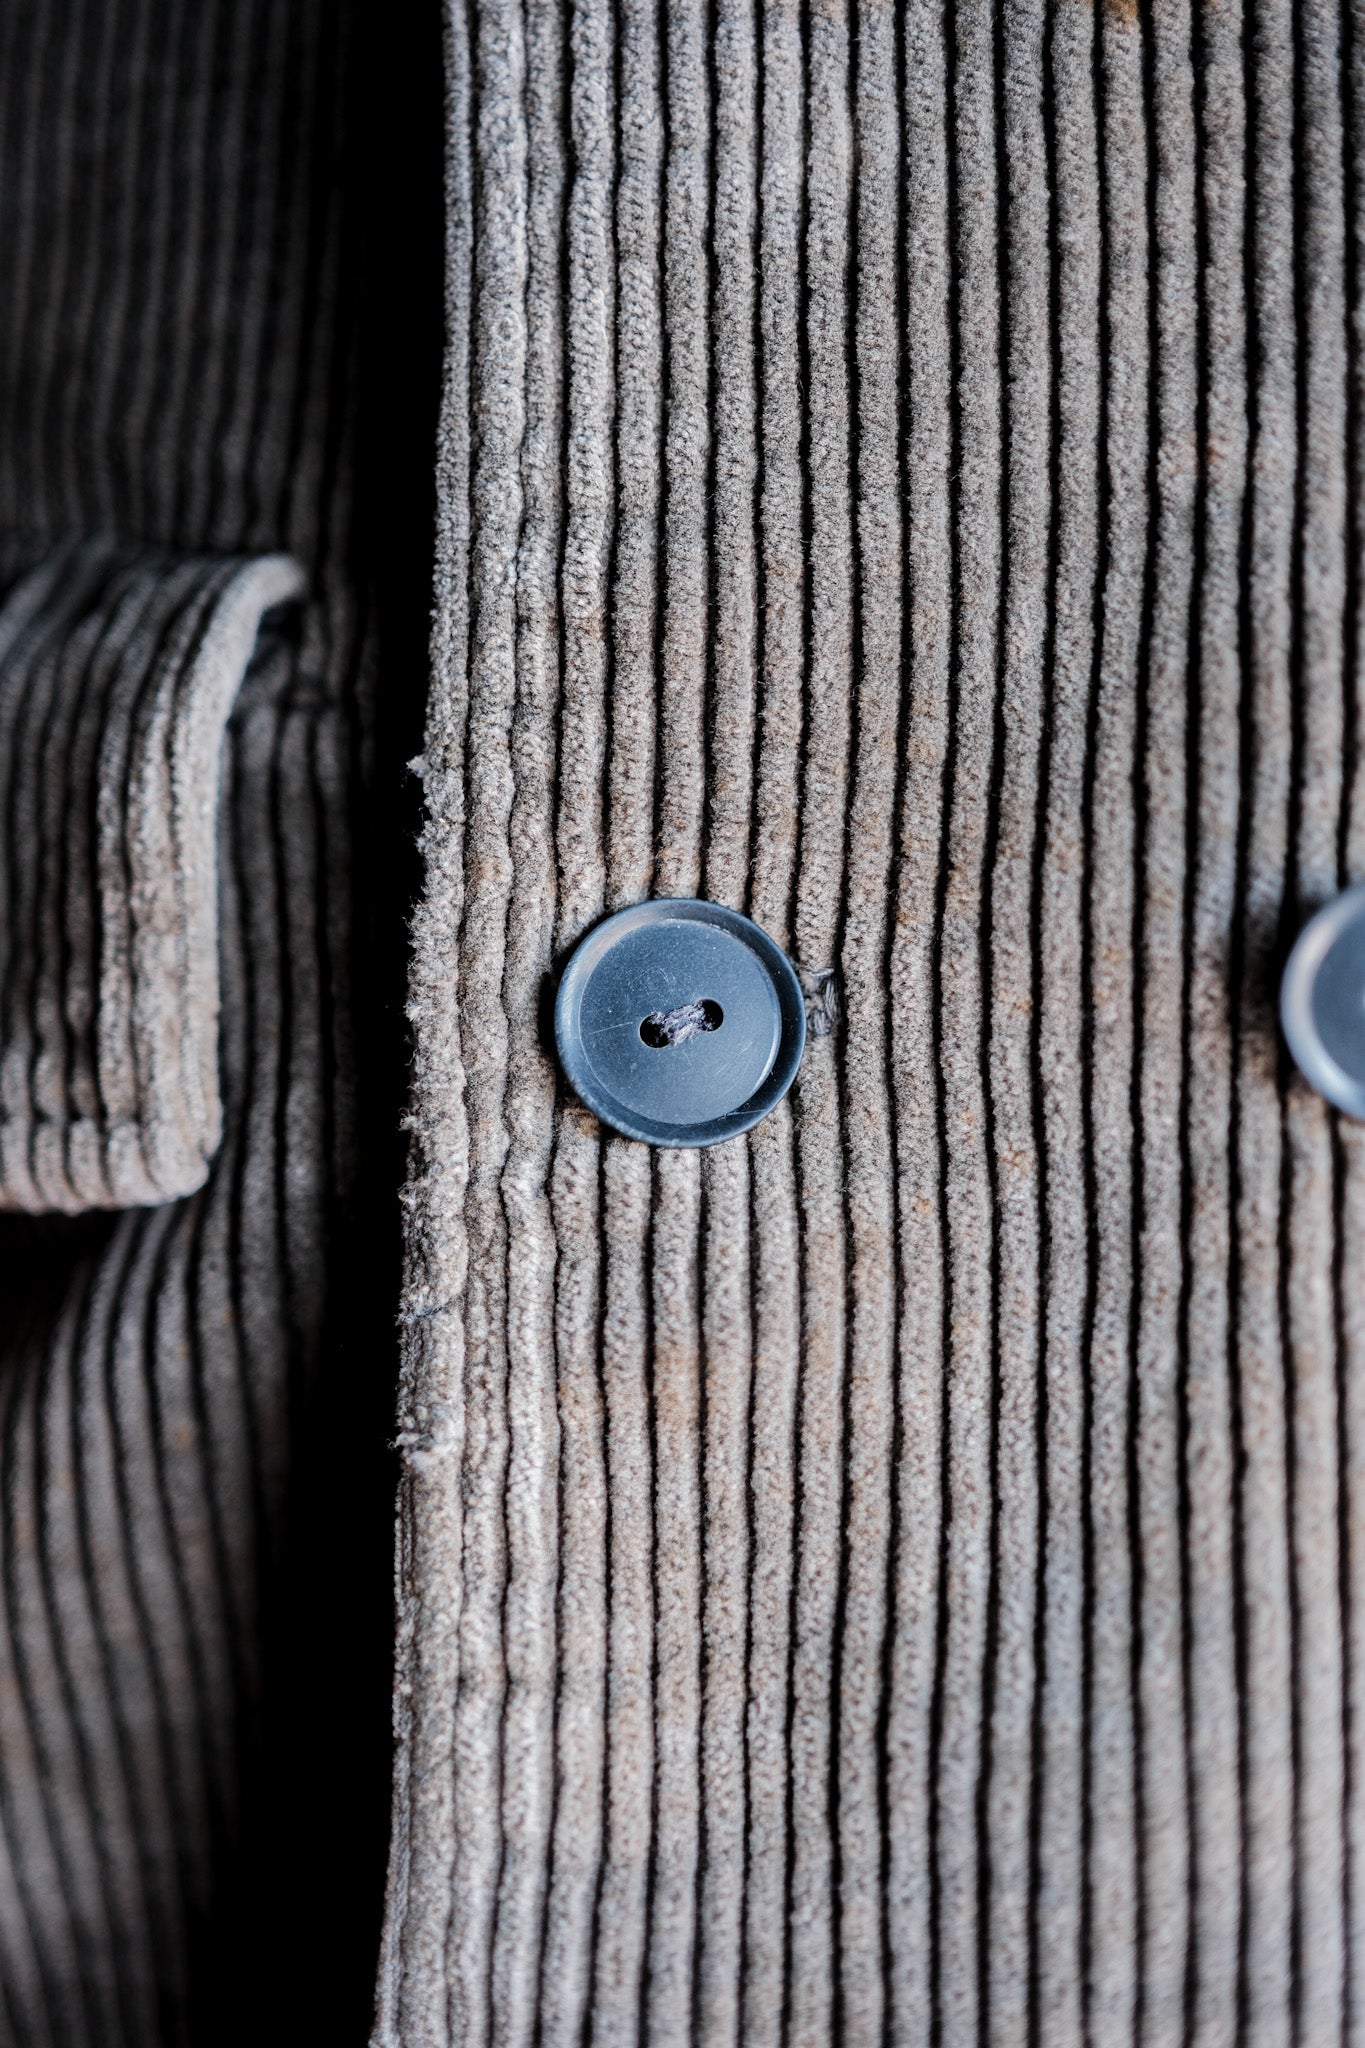 [〜50年代]比利時復古棕色燈芯絨x黑色摩爾斯雙胸部工作夾克